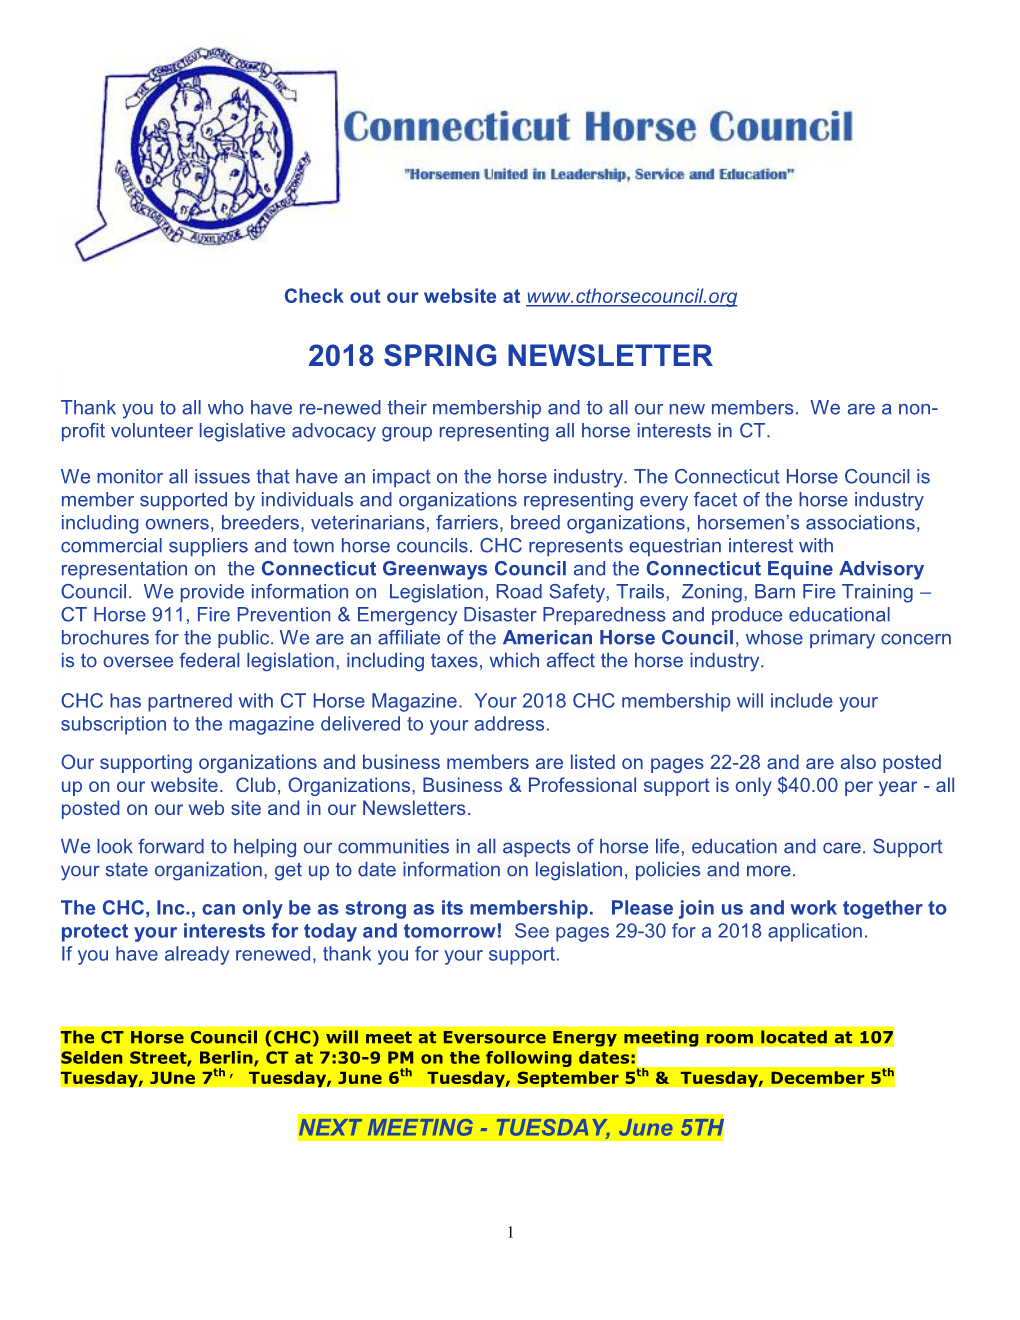 2018 Spring Newsletter